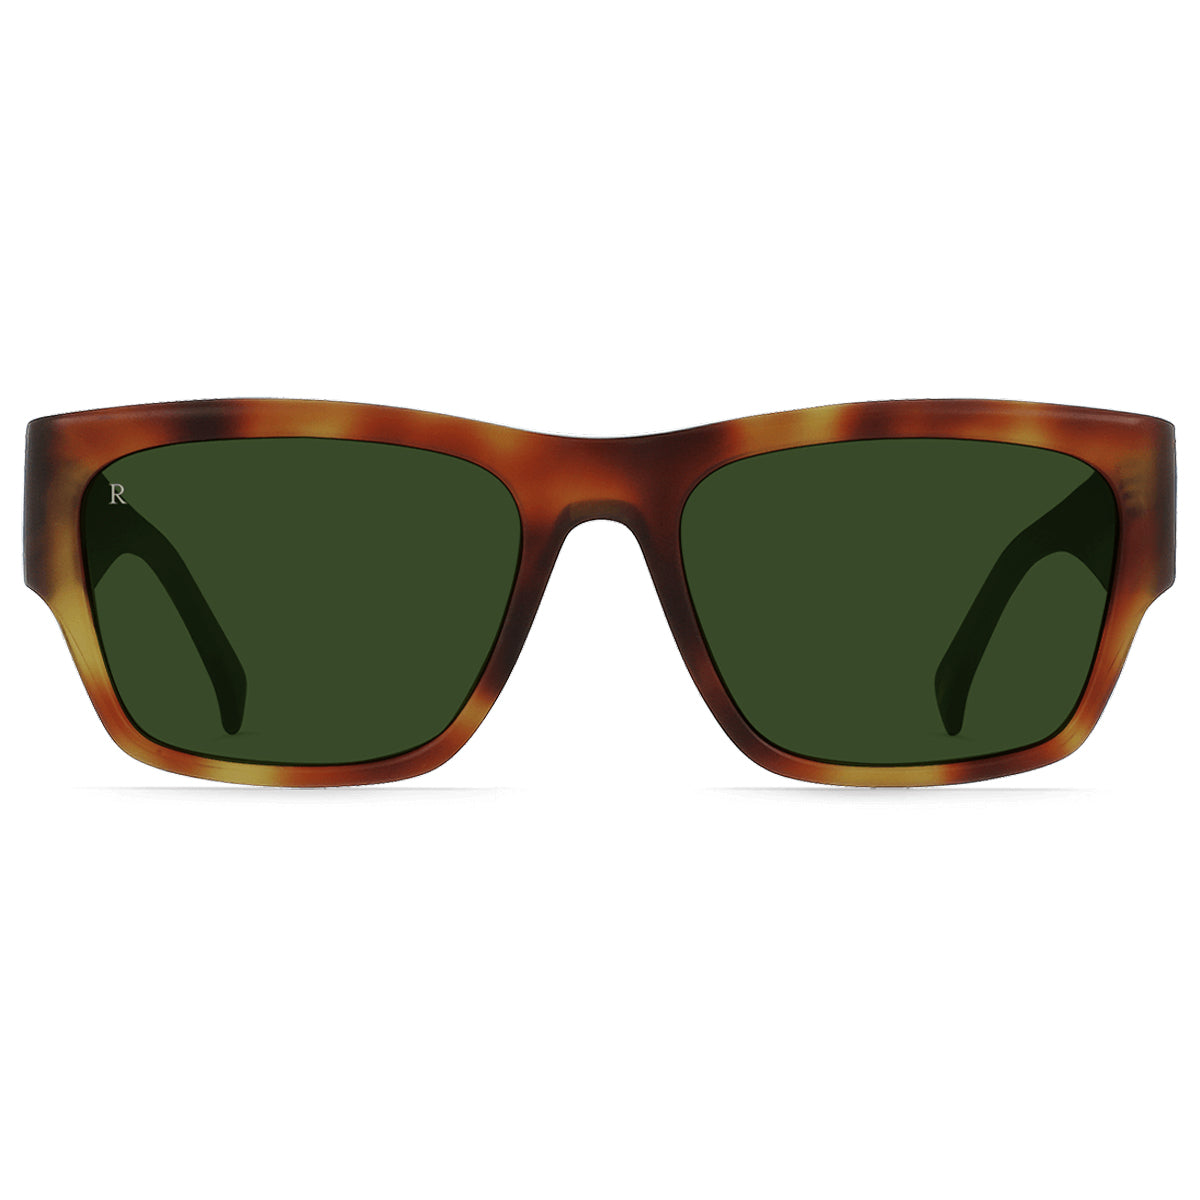 Raen Rufio Sunglasses - Split Finish Moab Tortoise/Bottle Green - 55 image 2